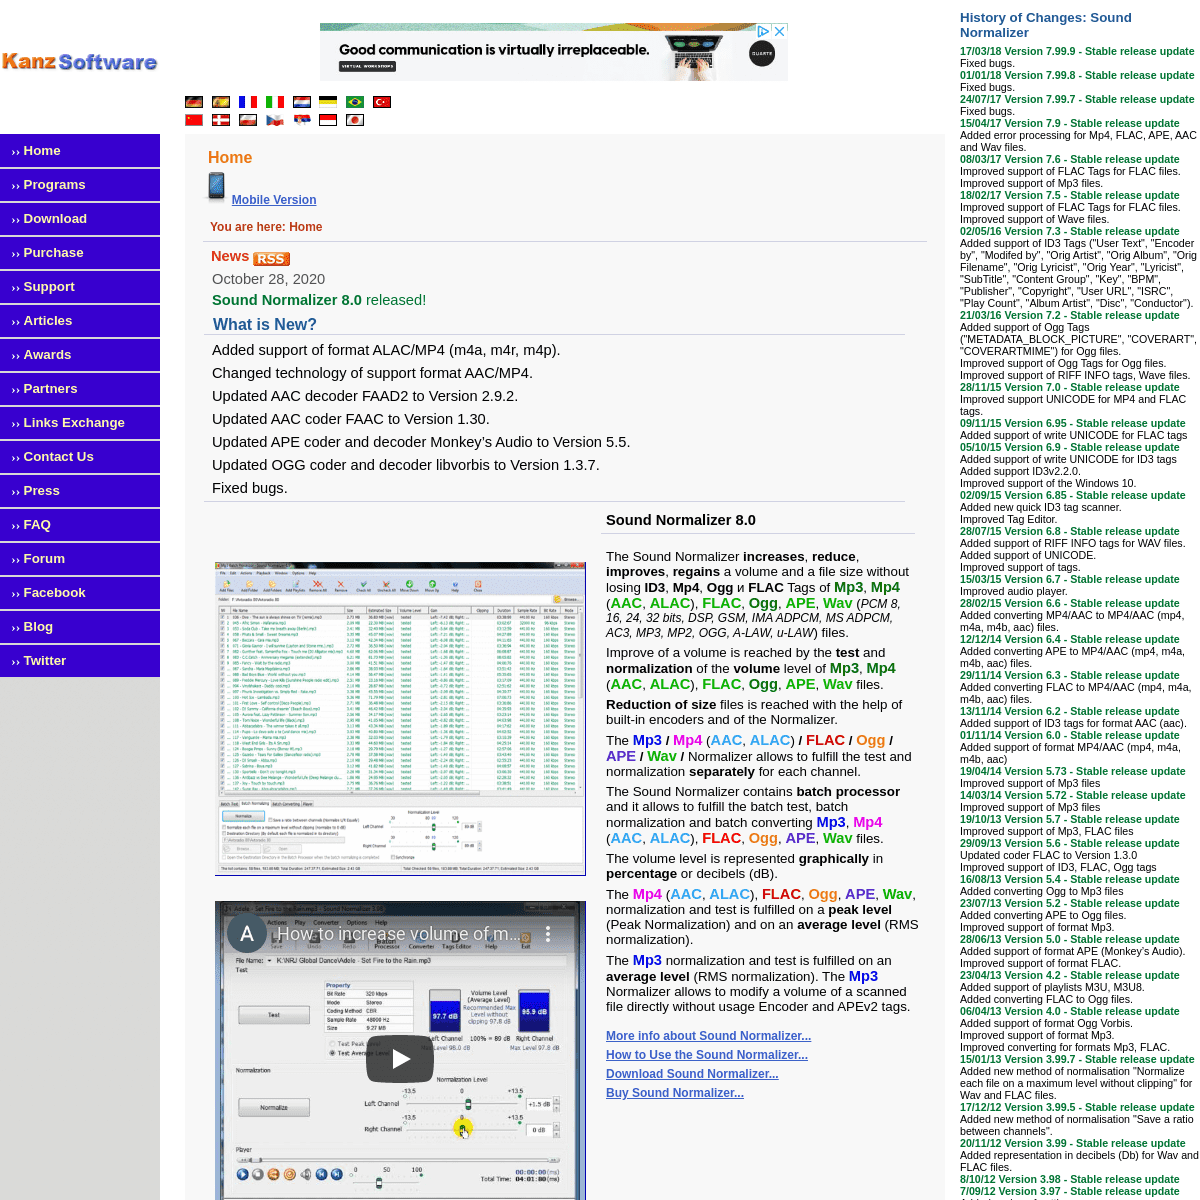 A complete backup of kanssoftware.com